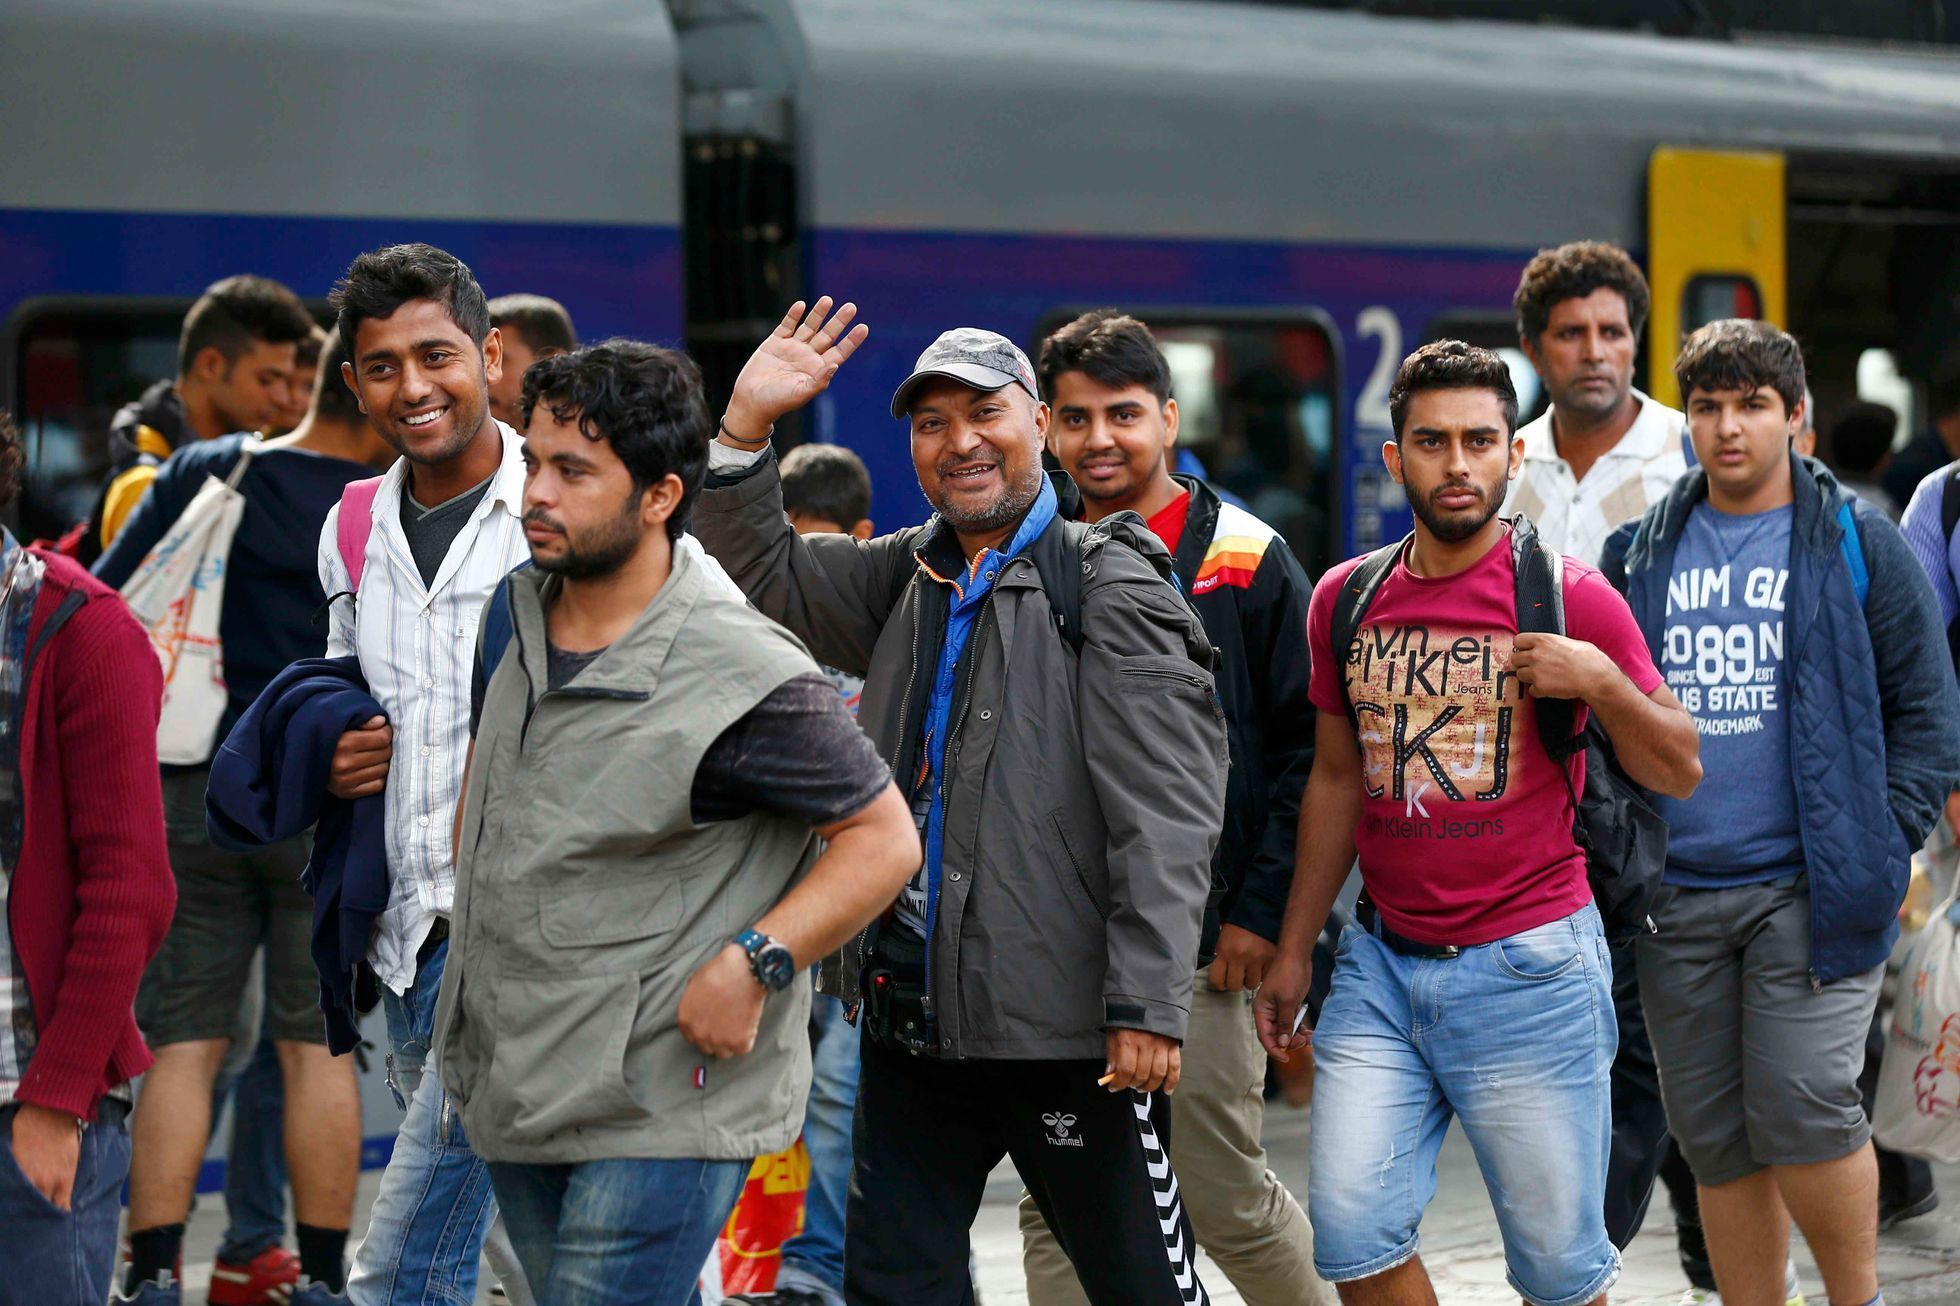 uprchlíci Migrants arrive at main station in Munich